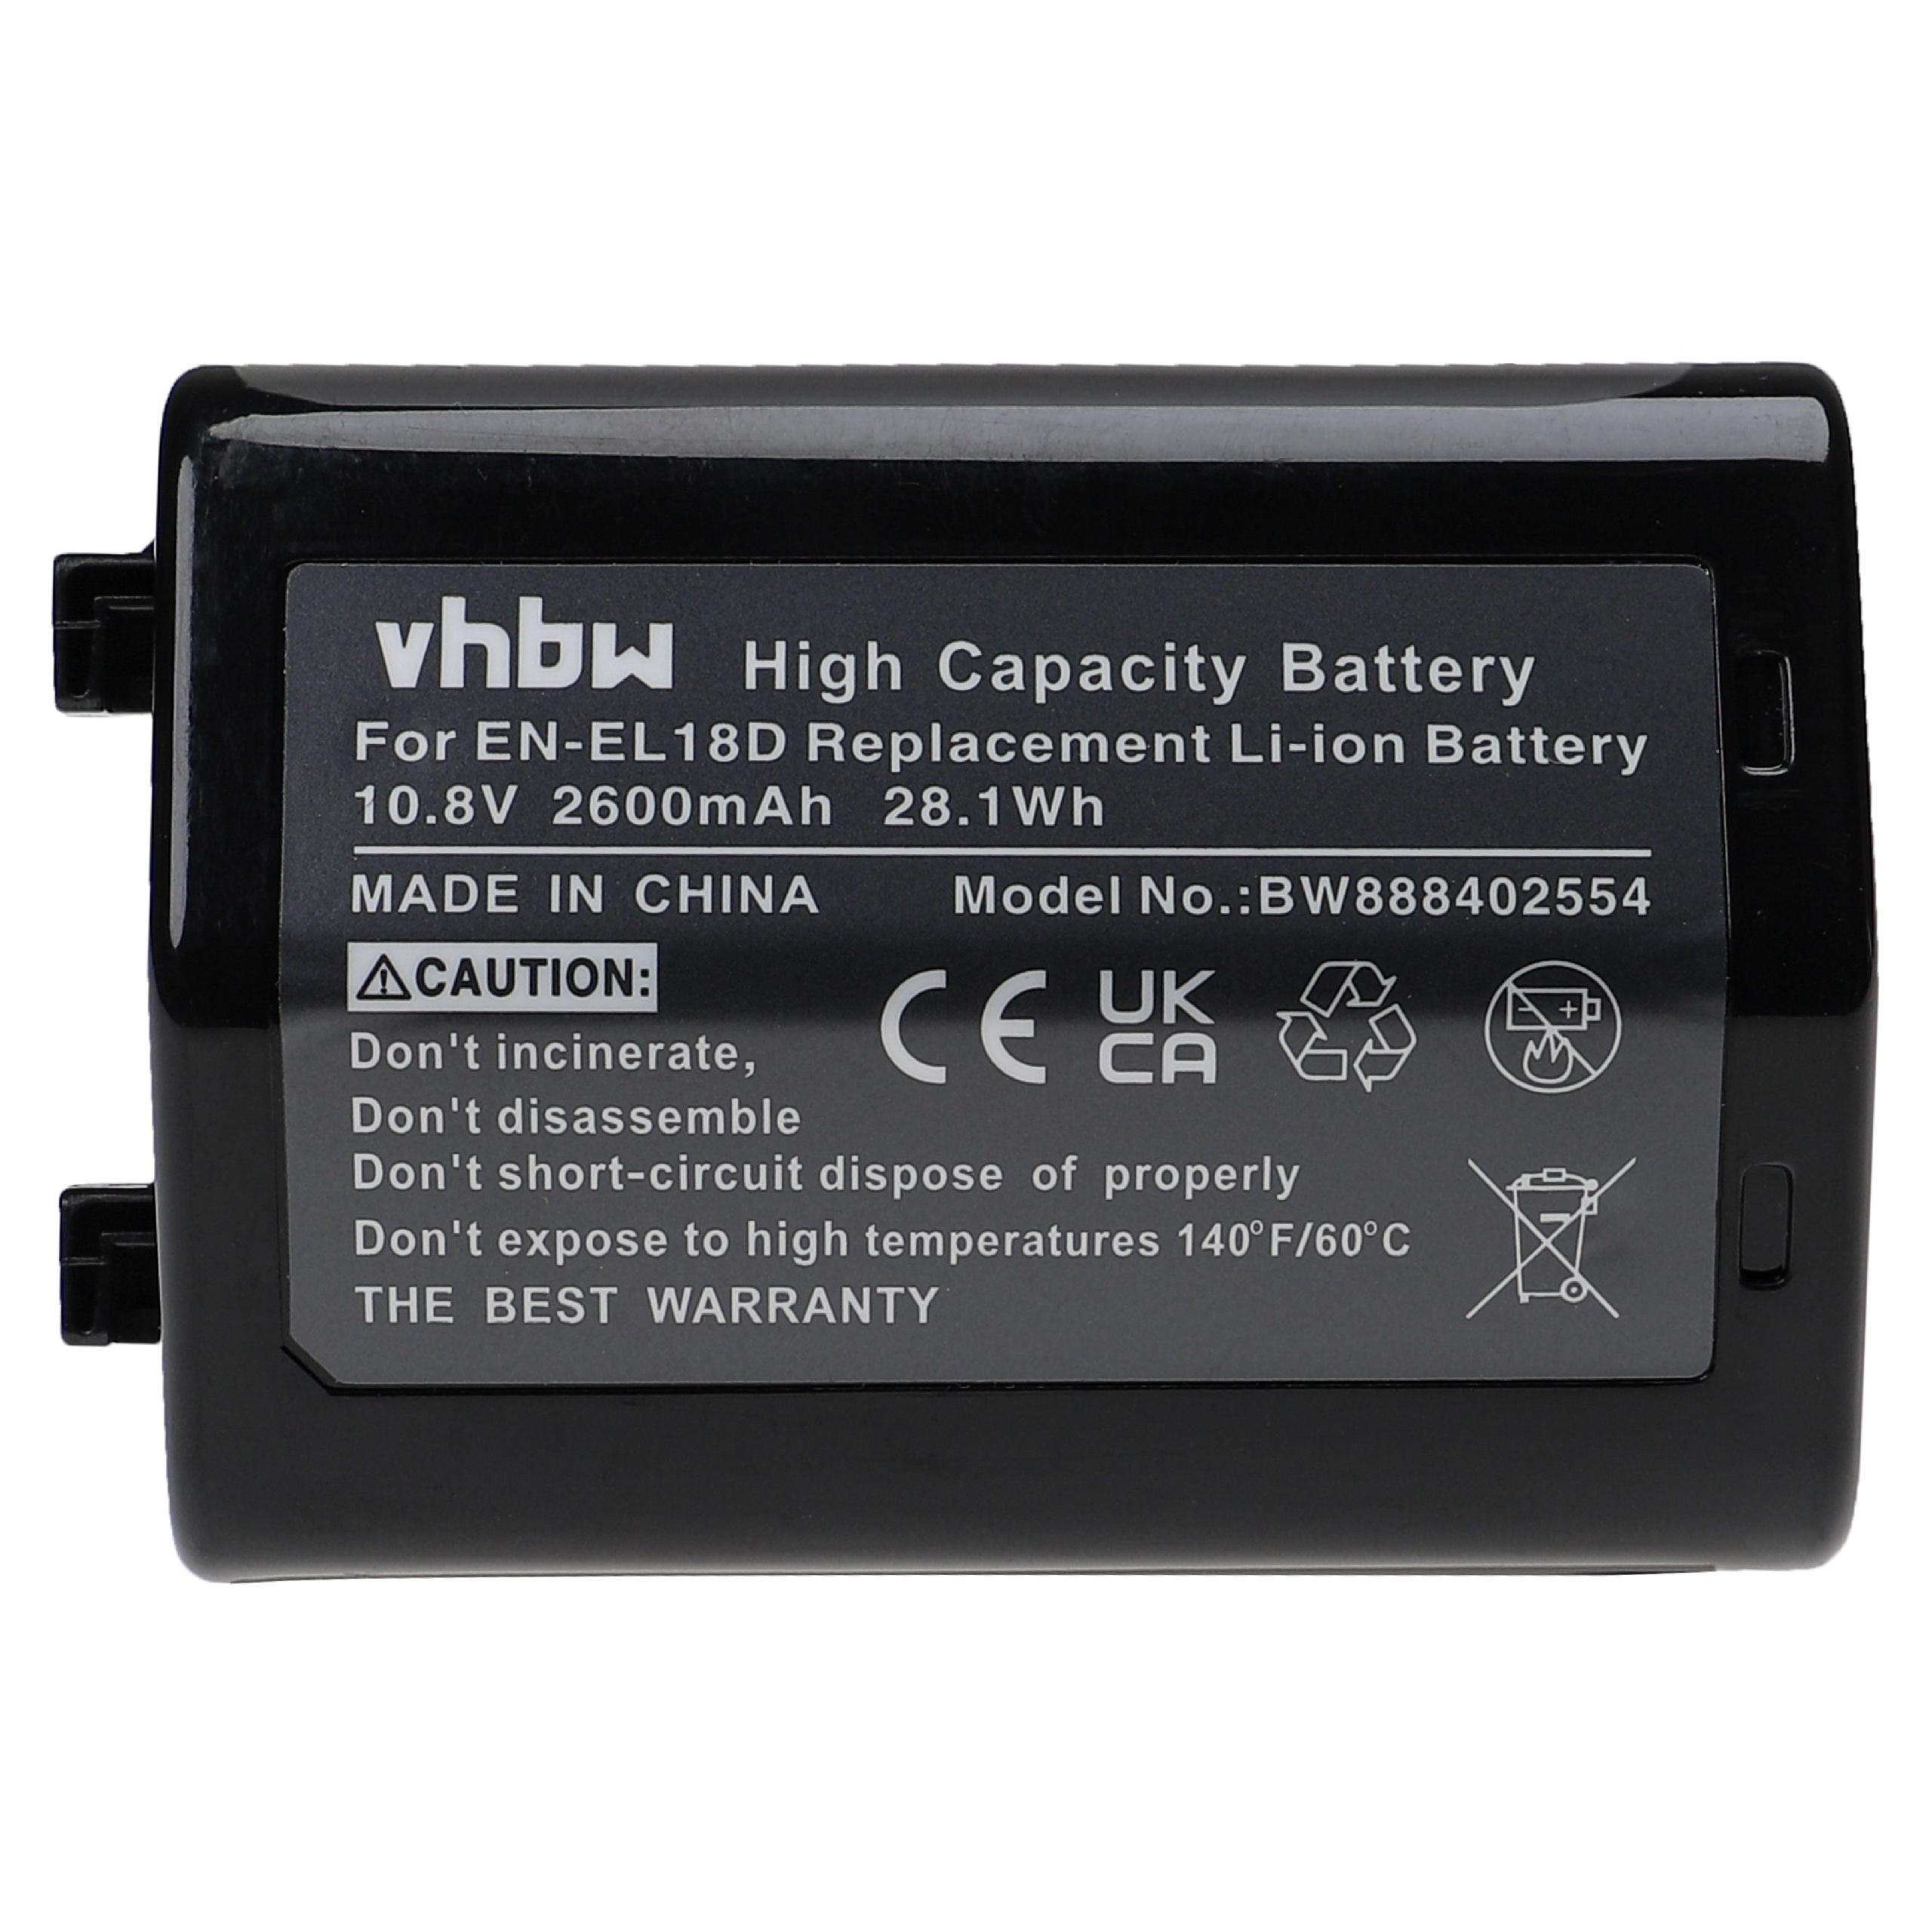 Battery Replacement for Nikon EN-EL18D - 2600mAh, 10.8V, Li-Ion